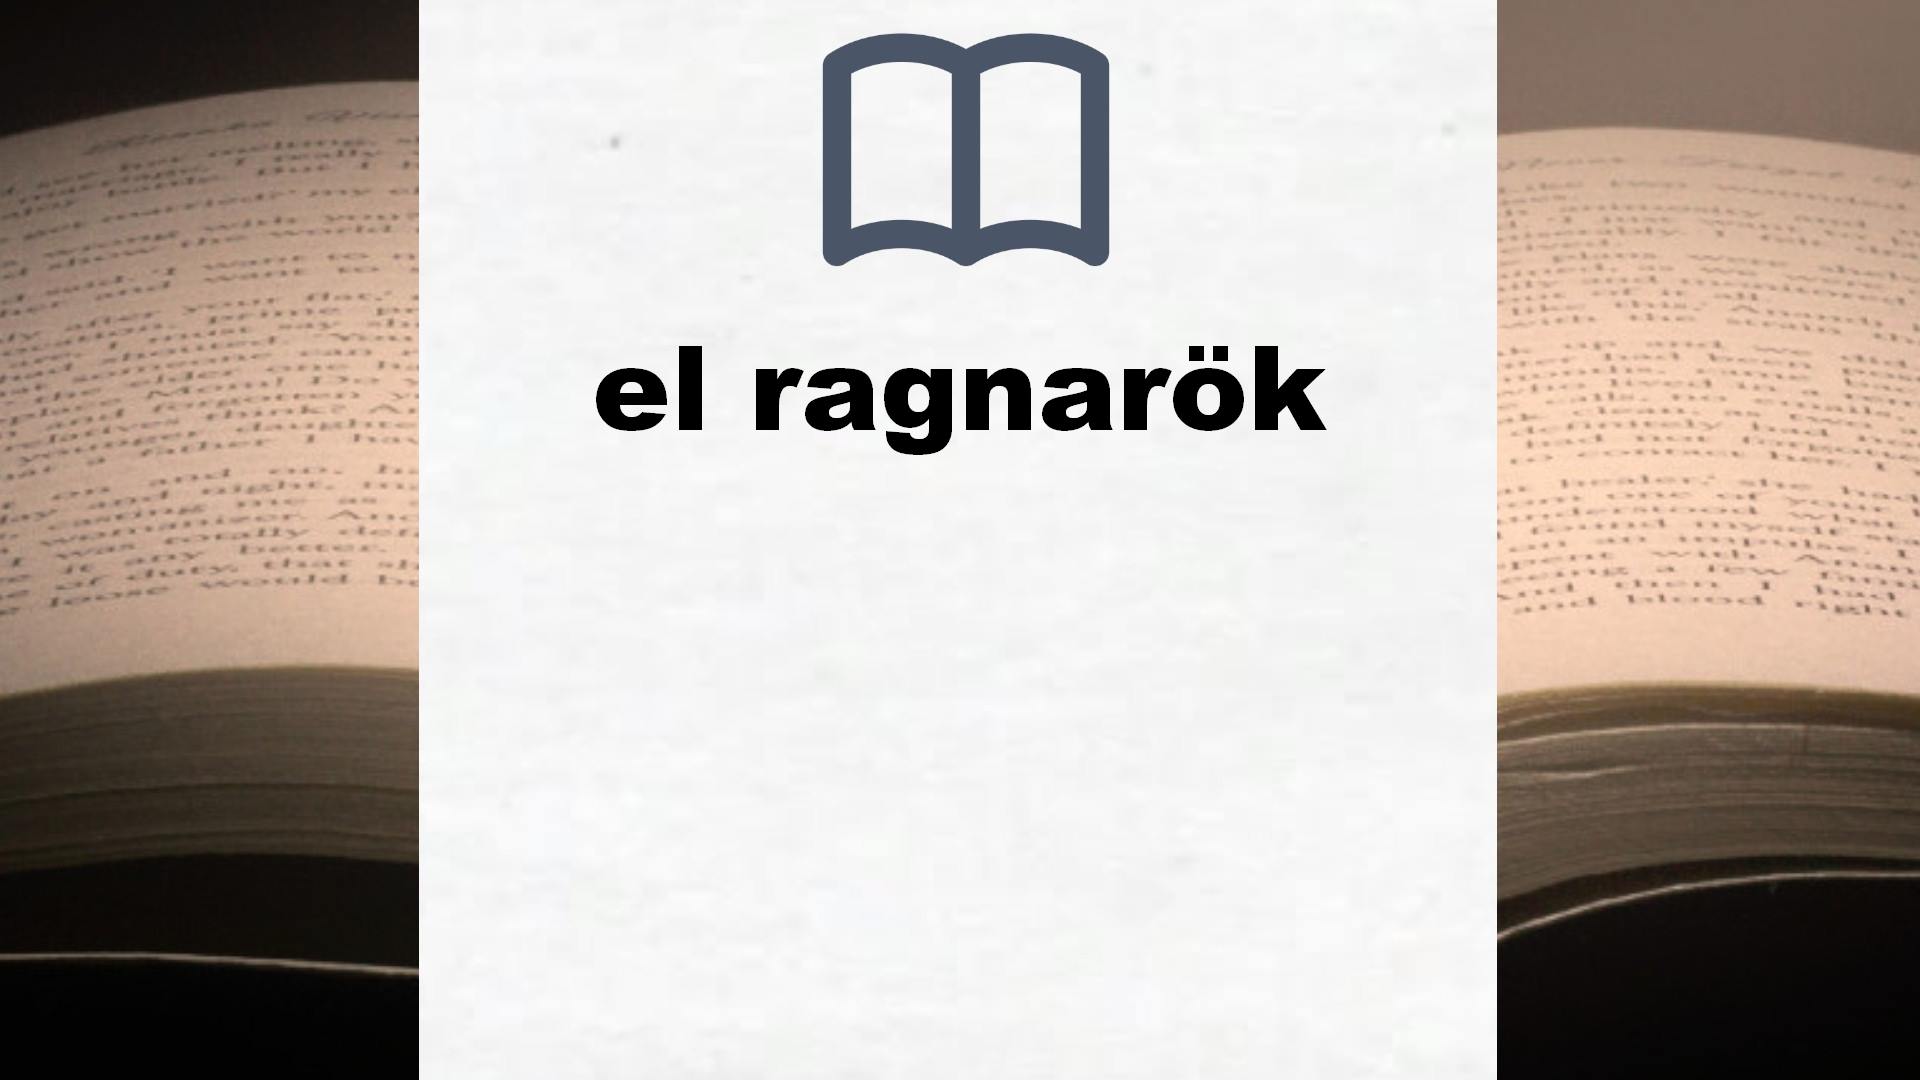 Libros sobre el ragnarök